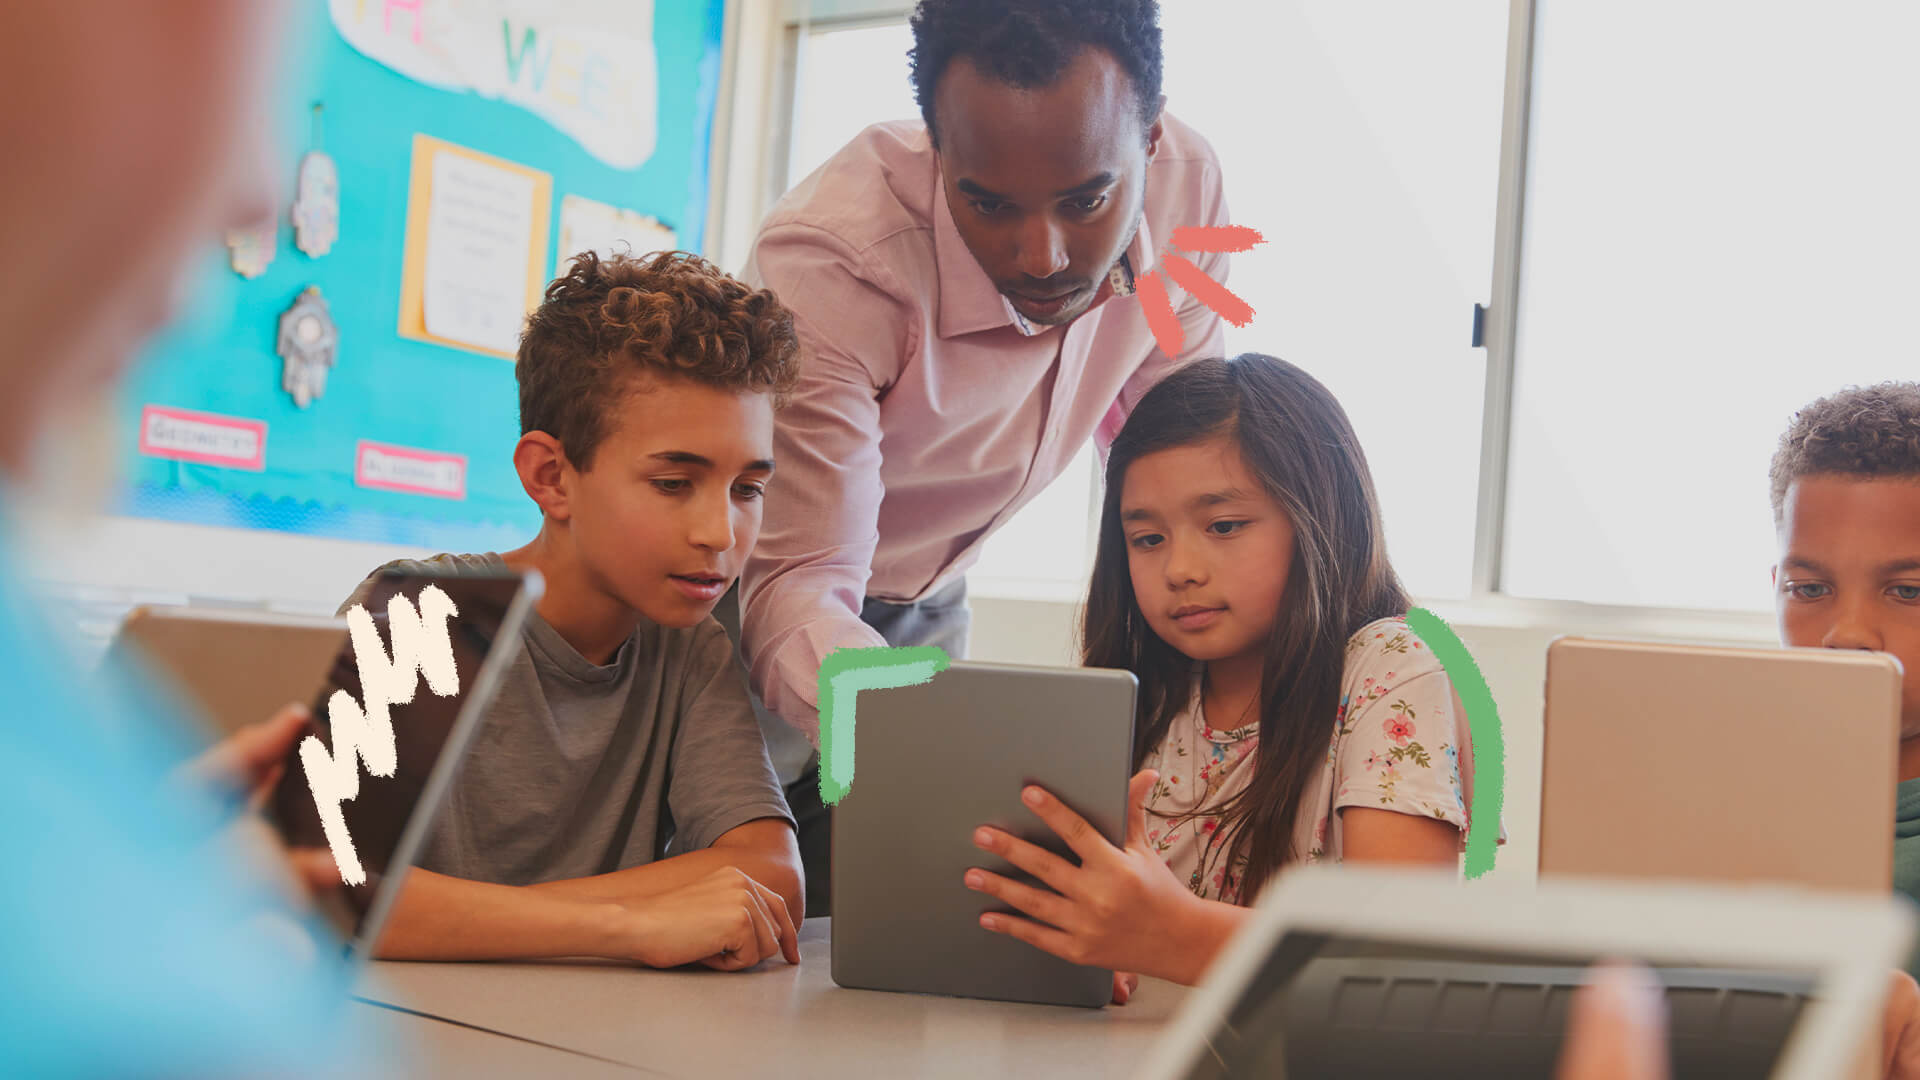 Plataforma auxilia educadores a orientarem crianças na internet: na foto, crianças olham para um tablet enquanto são orientadas por um professor. A imagem possui intervenções de rabiscos coloridos.